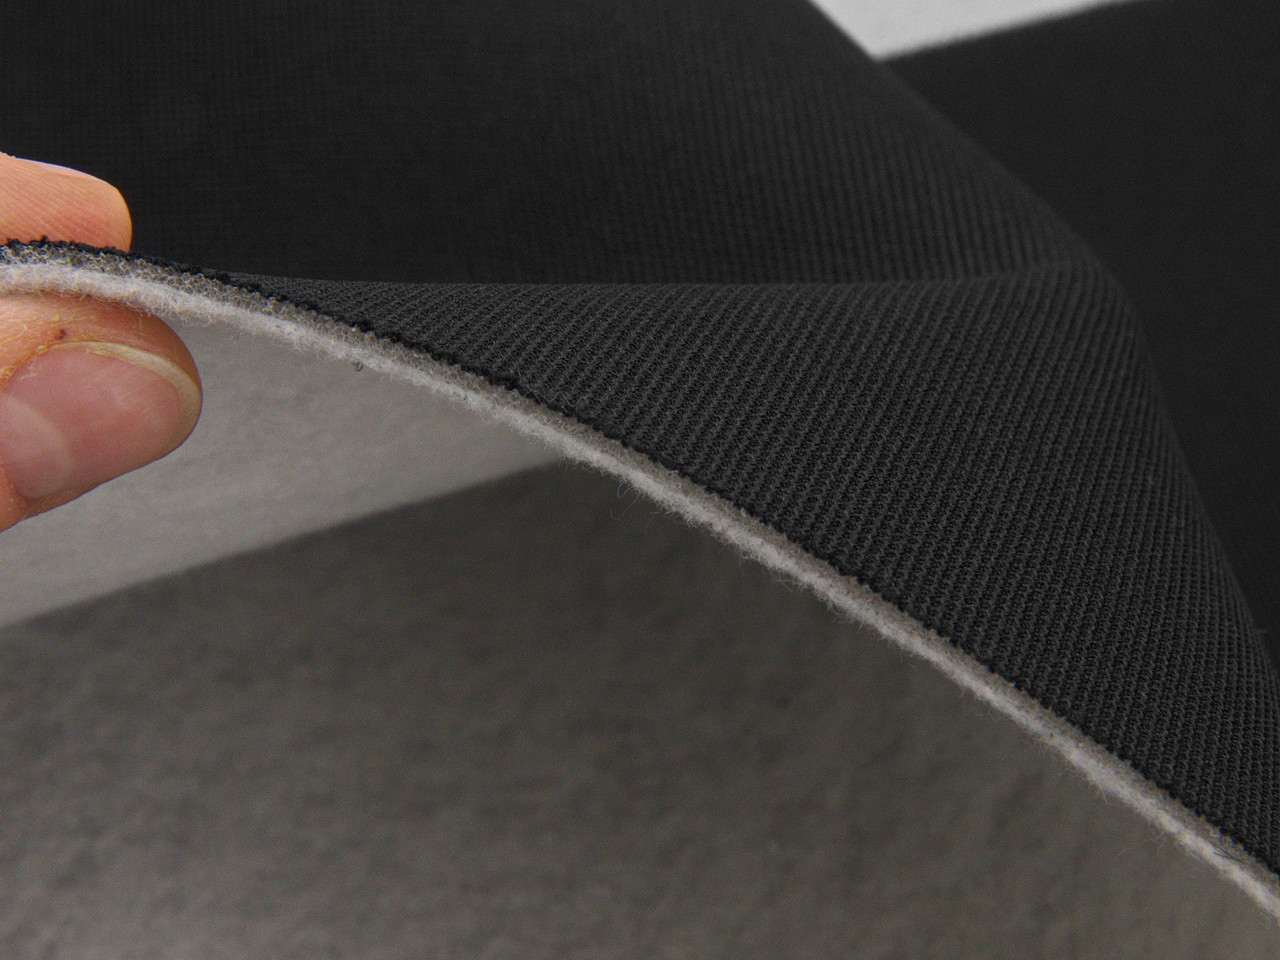 Автоткань потолочная Lacoste L-54, цвет черный, на поролоне и войлоке, толщина 3мм, ширина 165см, Турция детальная фотка